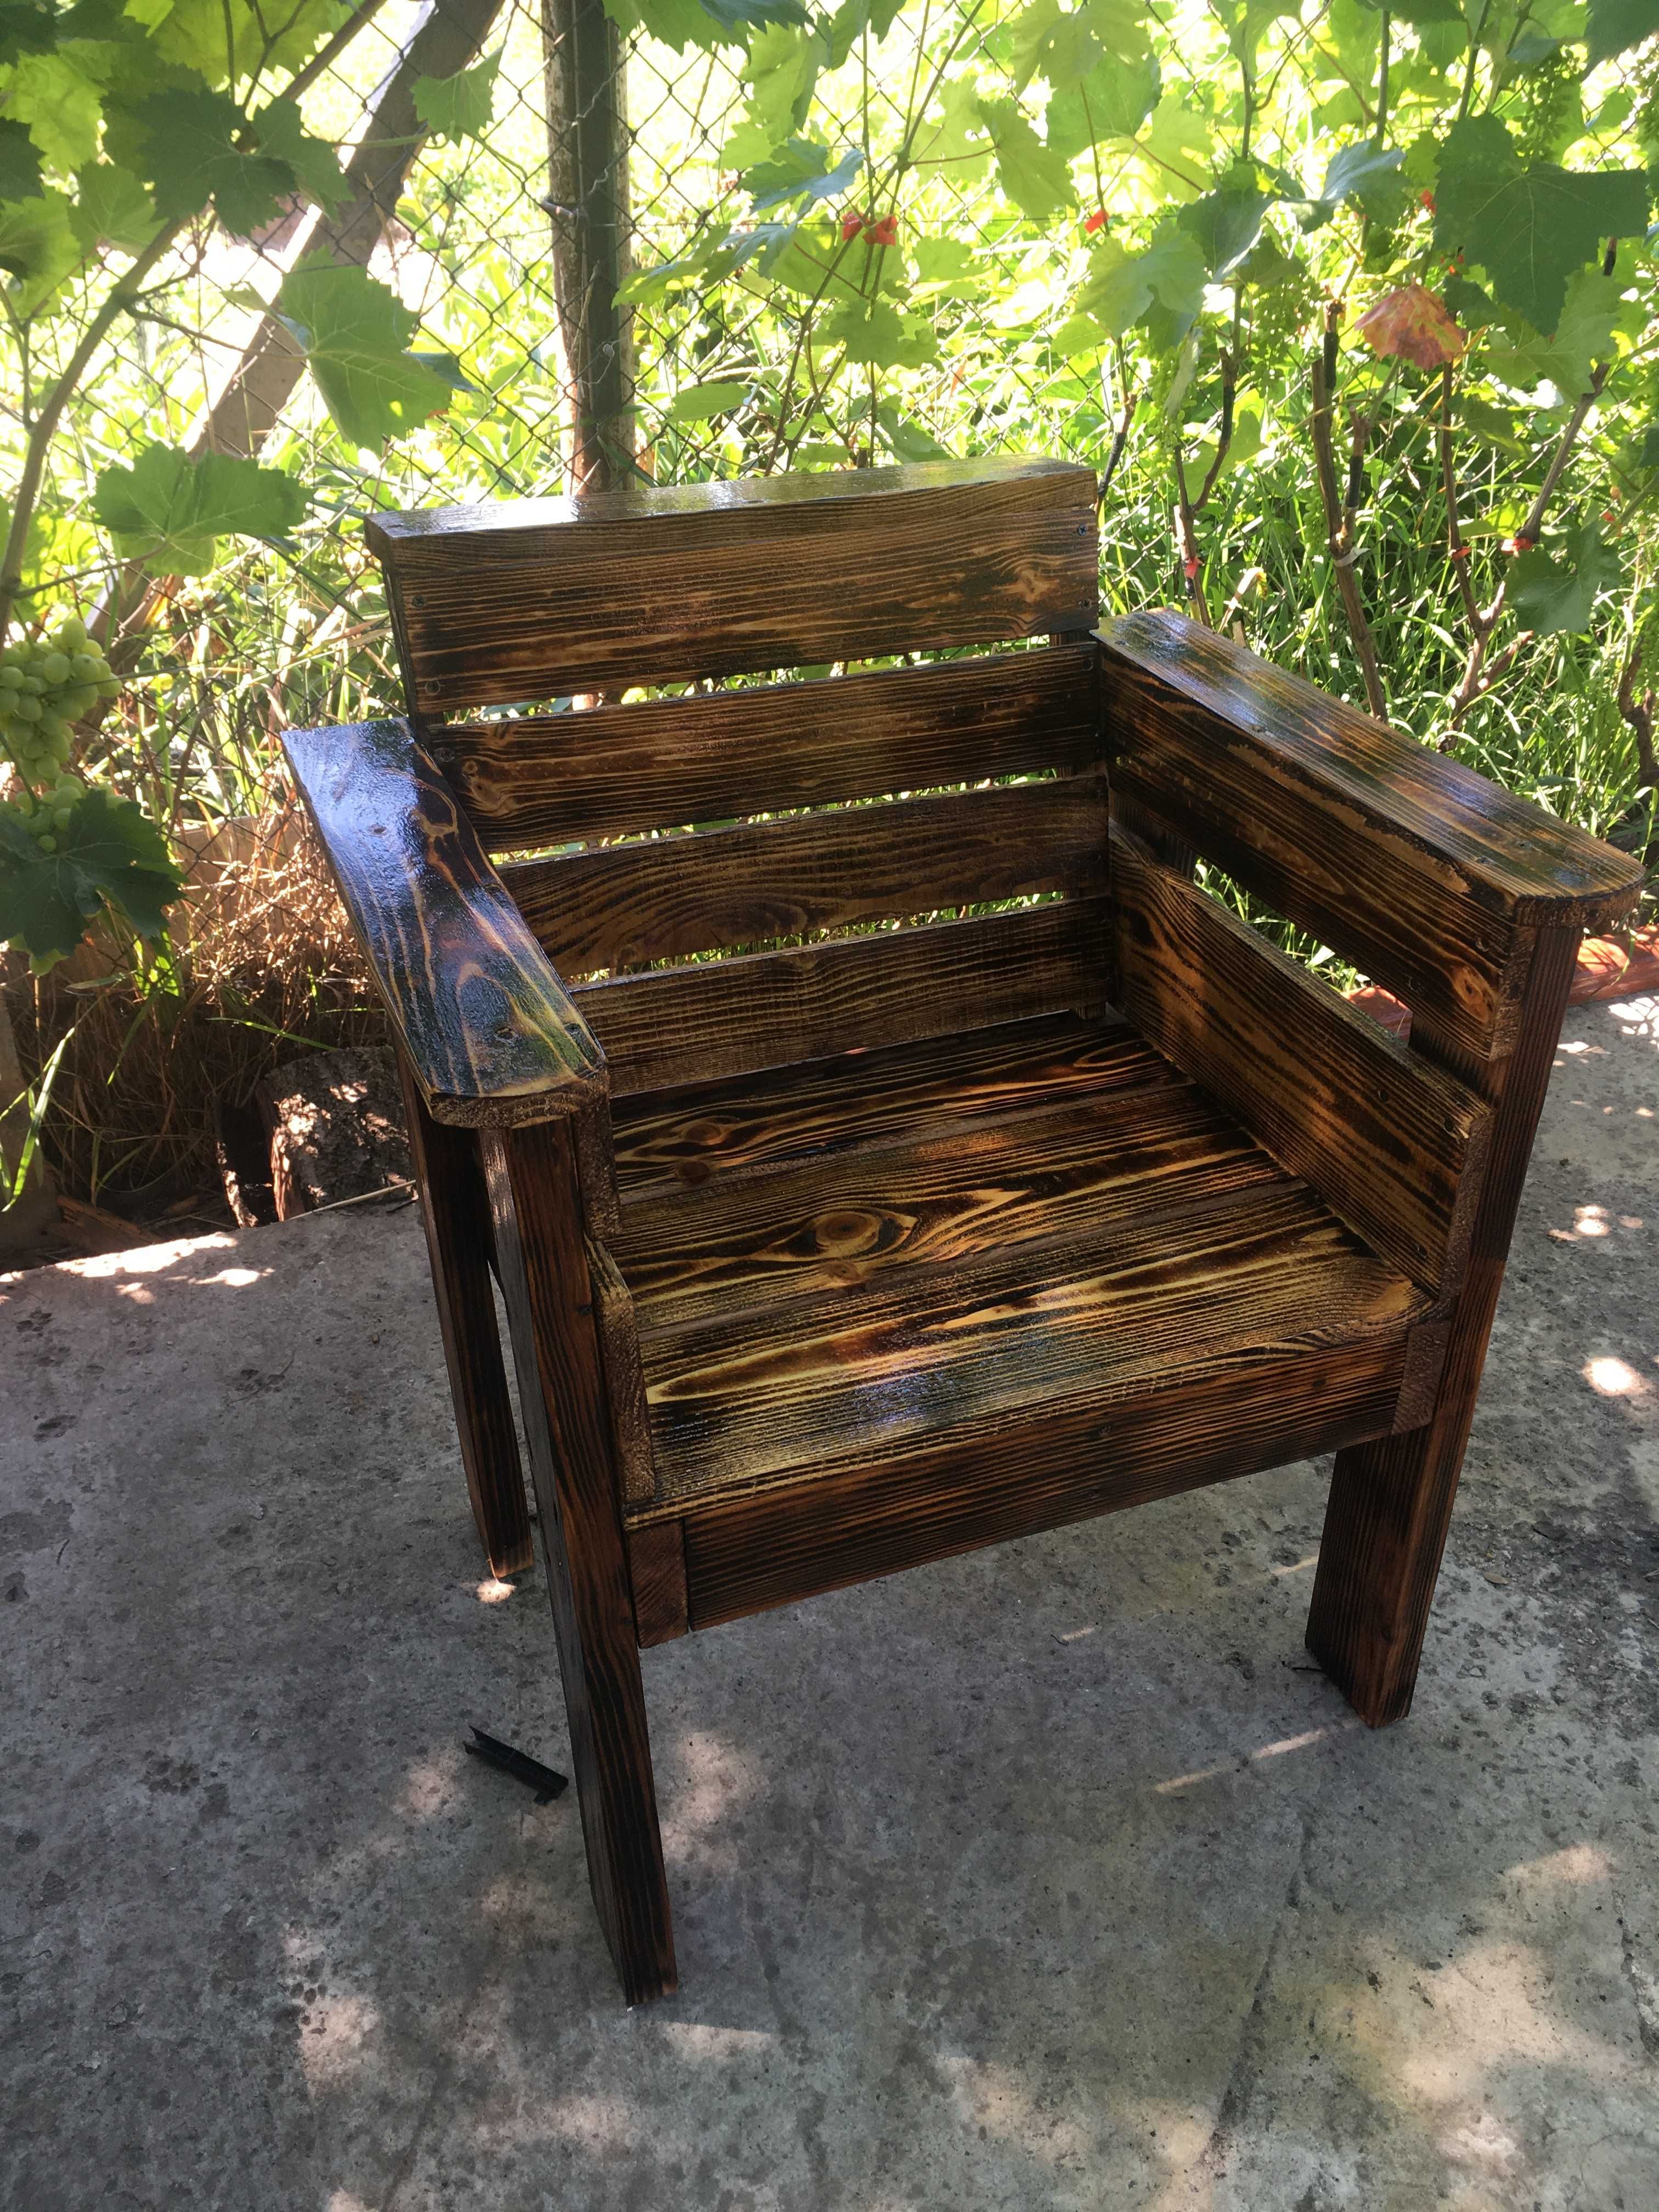 крісло садове дерев'яне